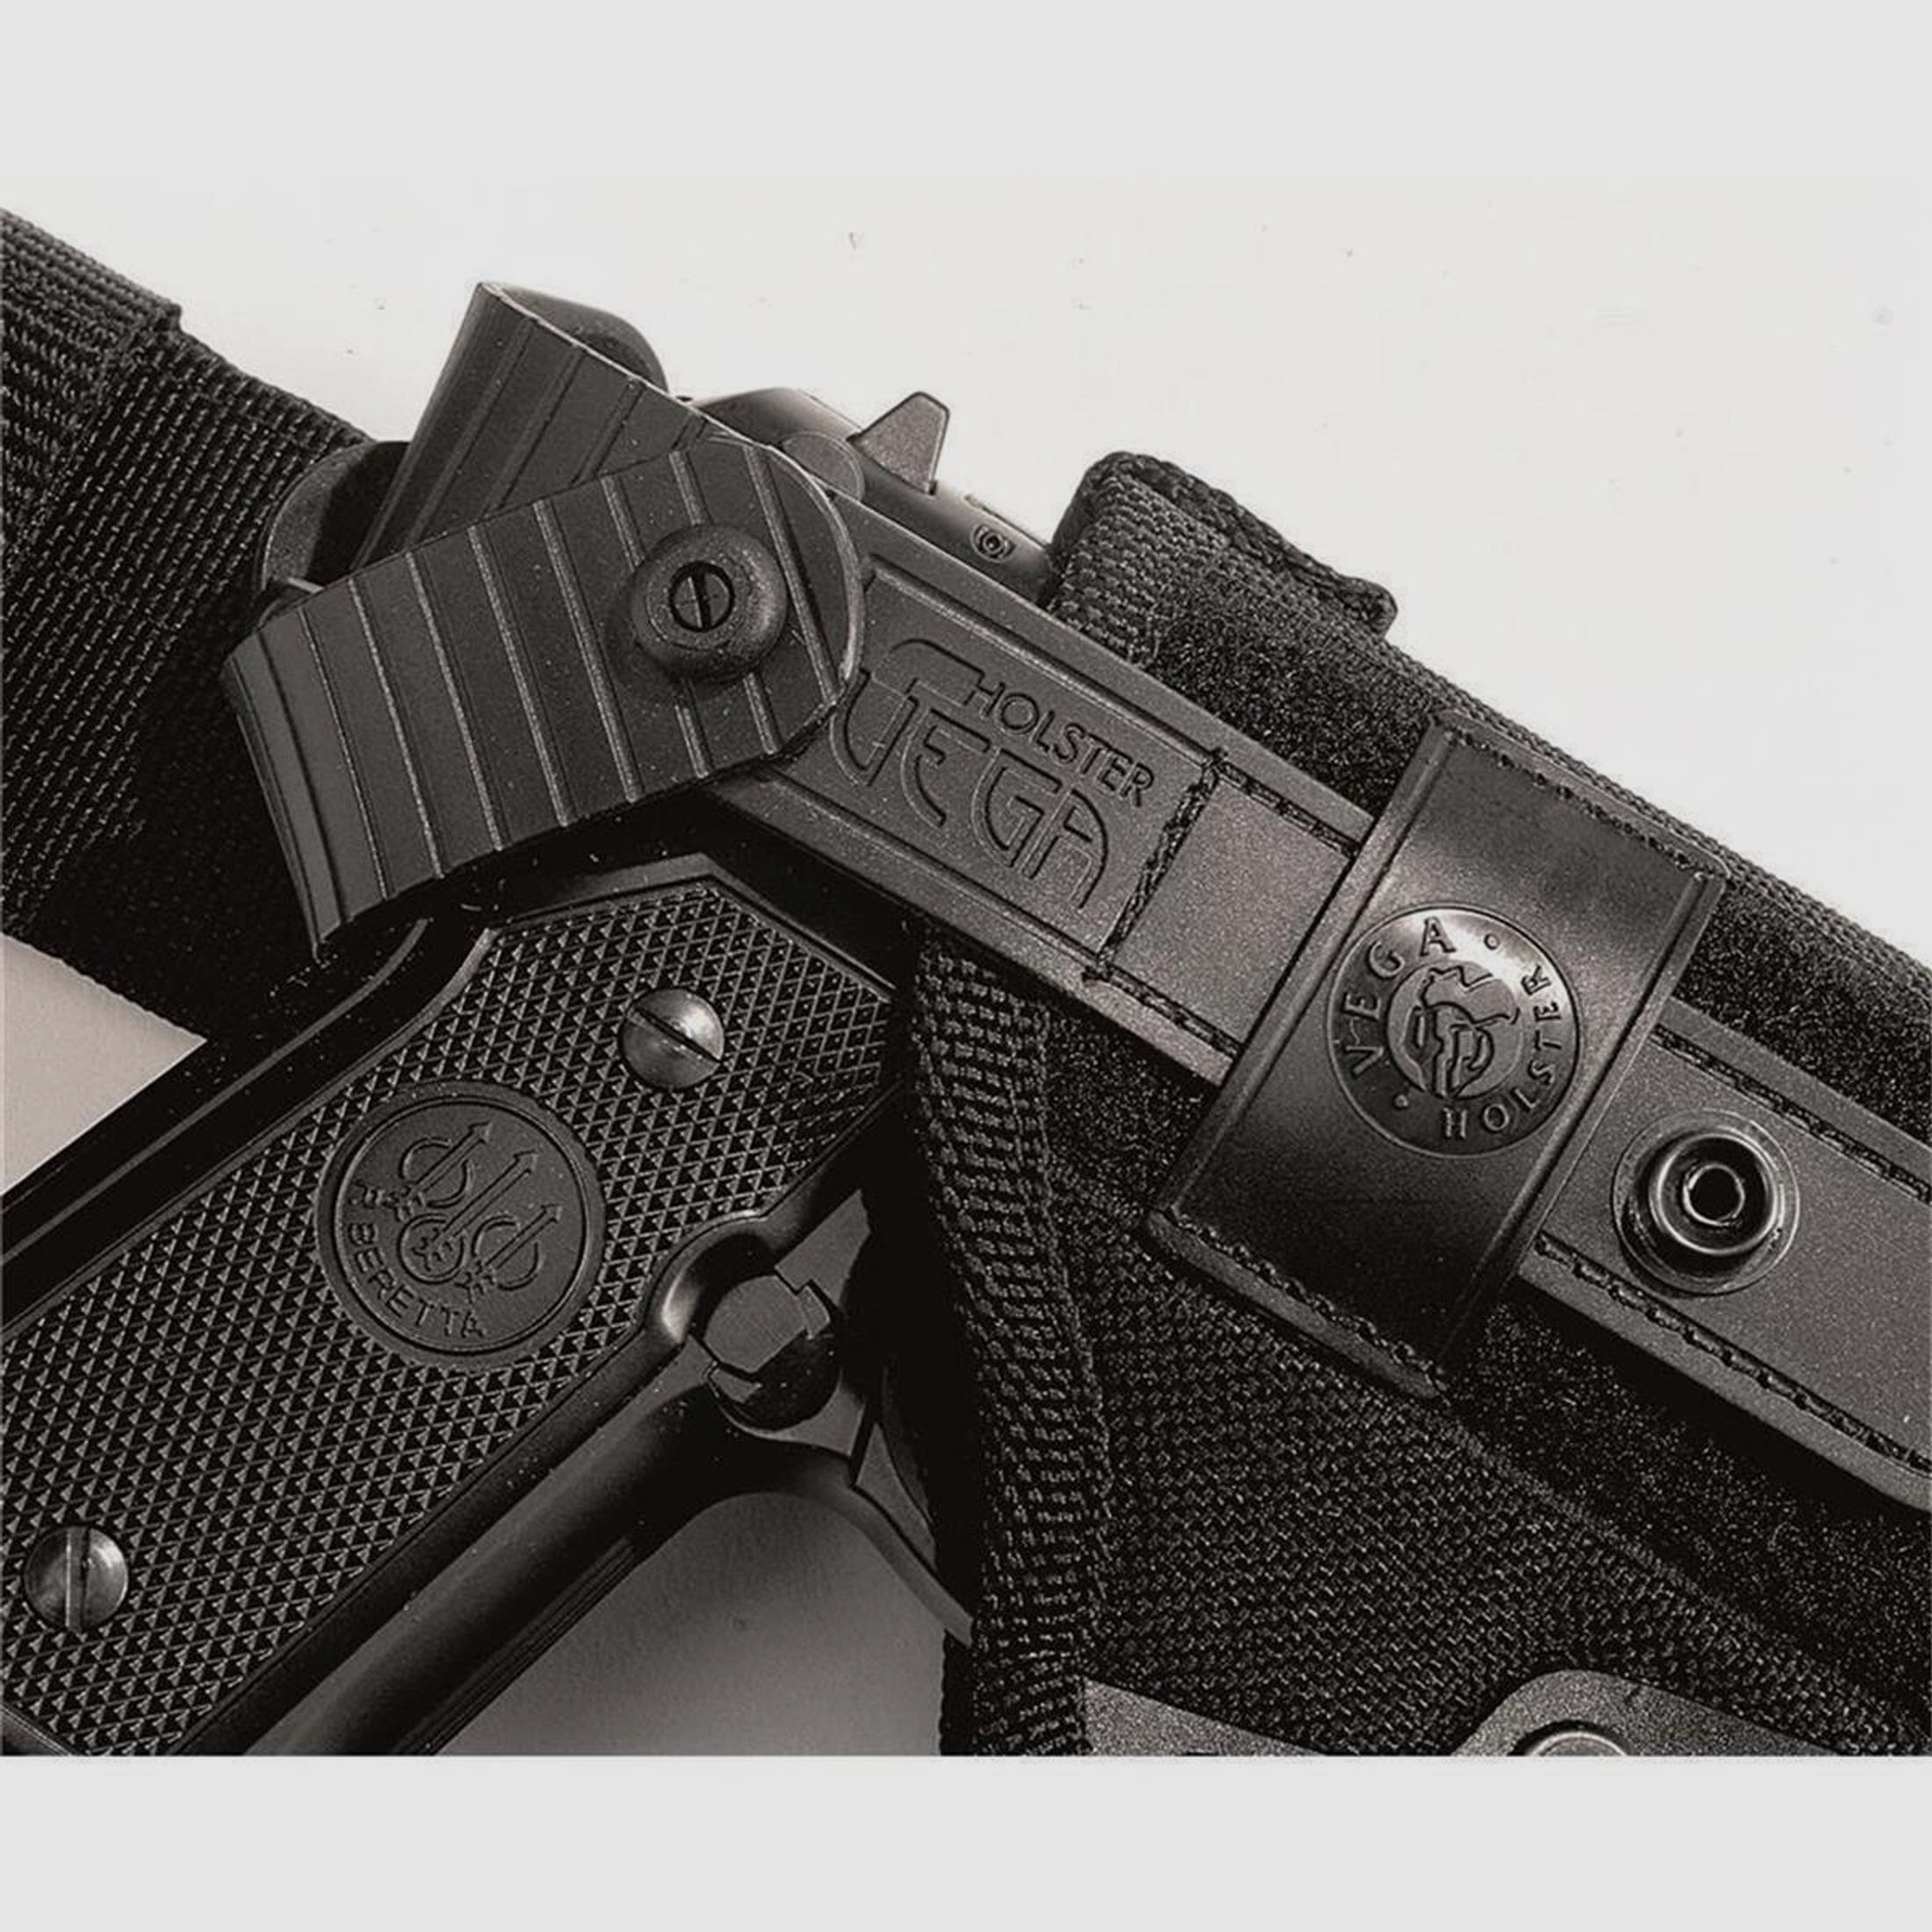 Taktisches Oberschenkelholster mit doppelter Sicherungslasche Glock 20/21/29/30/36, H&K USP/P30L, SFP9-VP9, CZ P07, Walther P99/PPQ,Beretta APX OD Green Rechtshänder